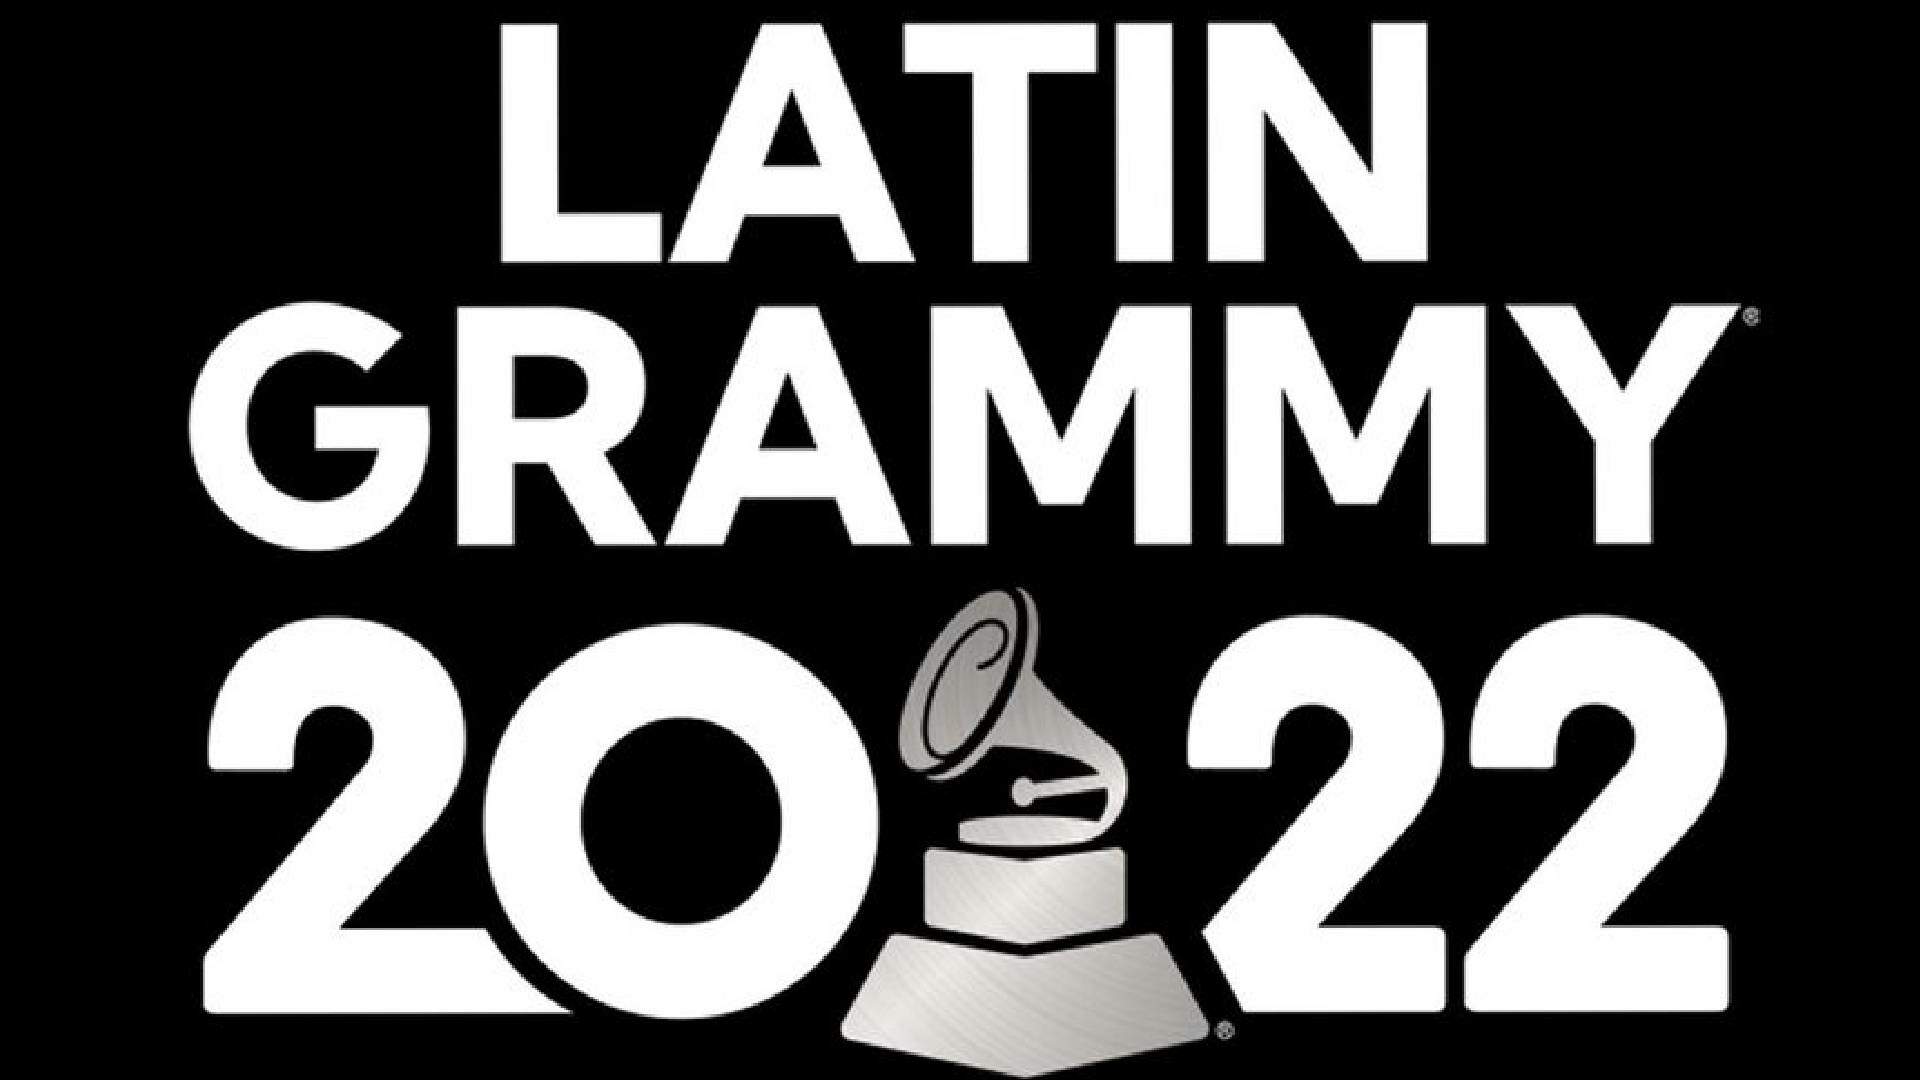 Grammy Latino 2022: premiação anuncia detalhes da cerimônia com presença de cantoras brasileiras - Metropolitana FM